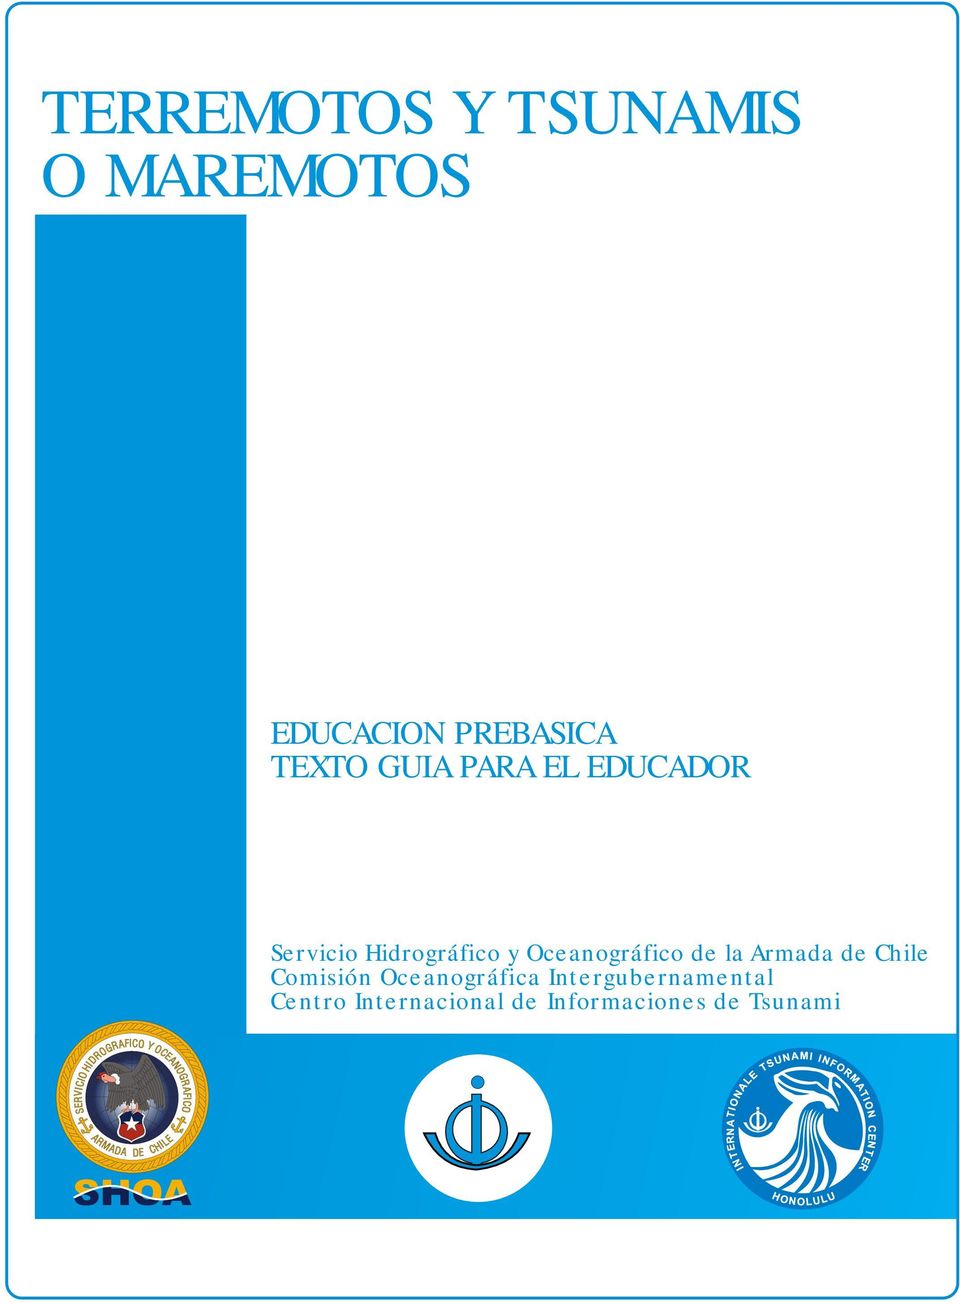 Oceanográfico de la Armada de Chile Comisión